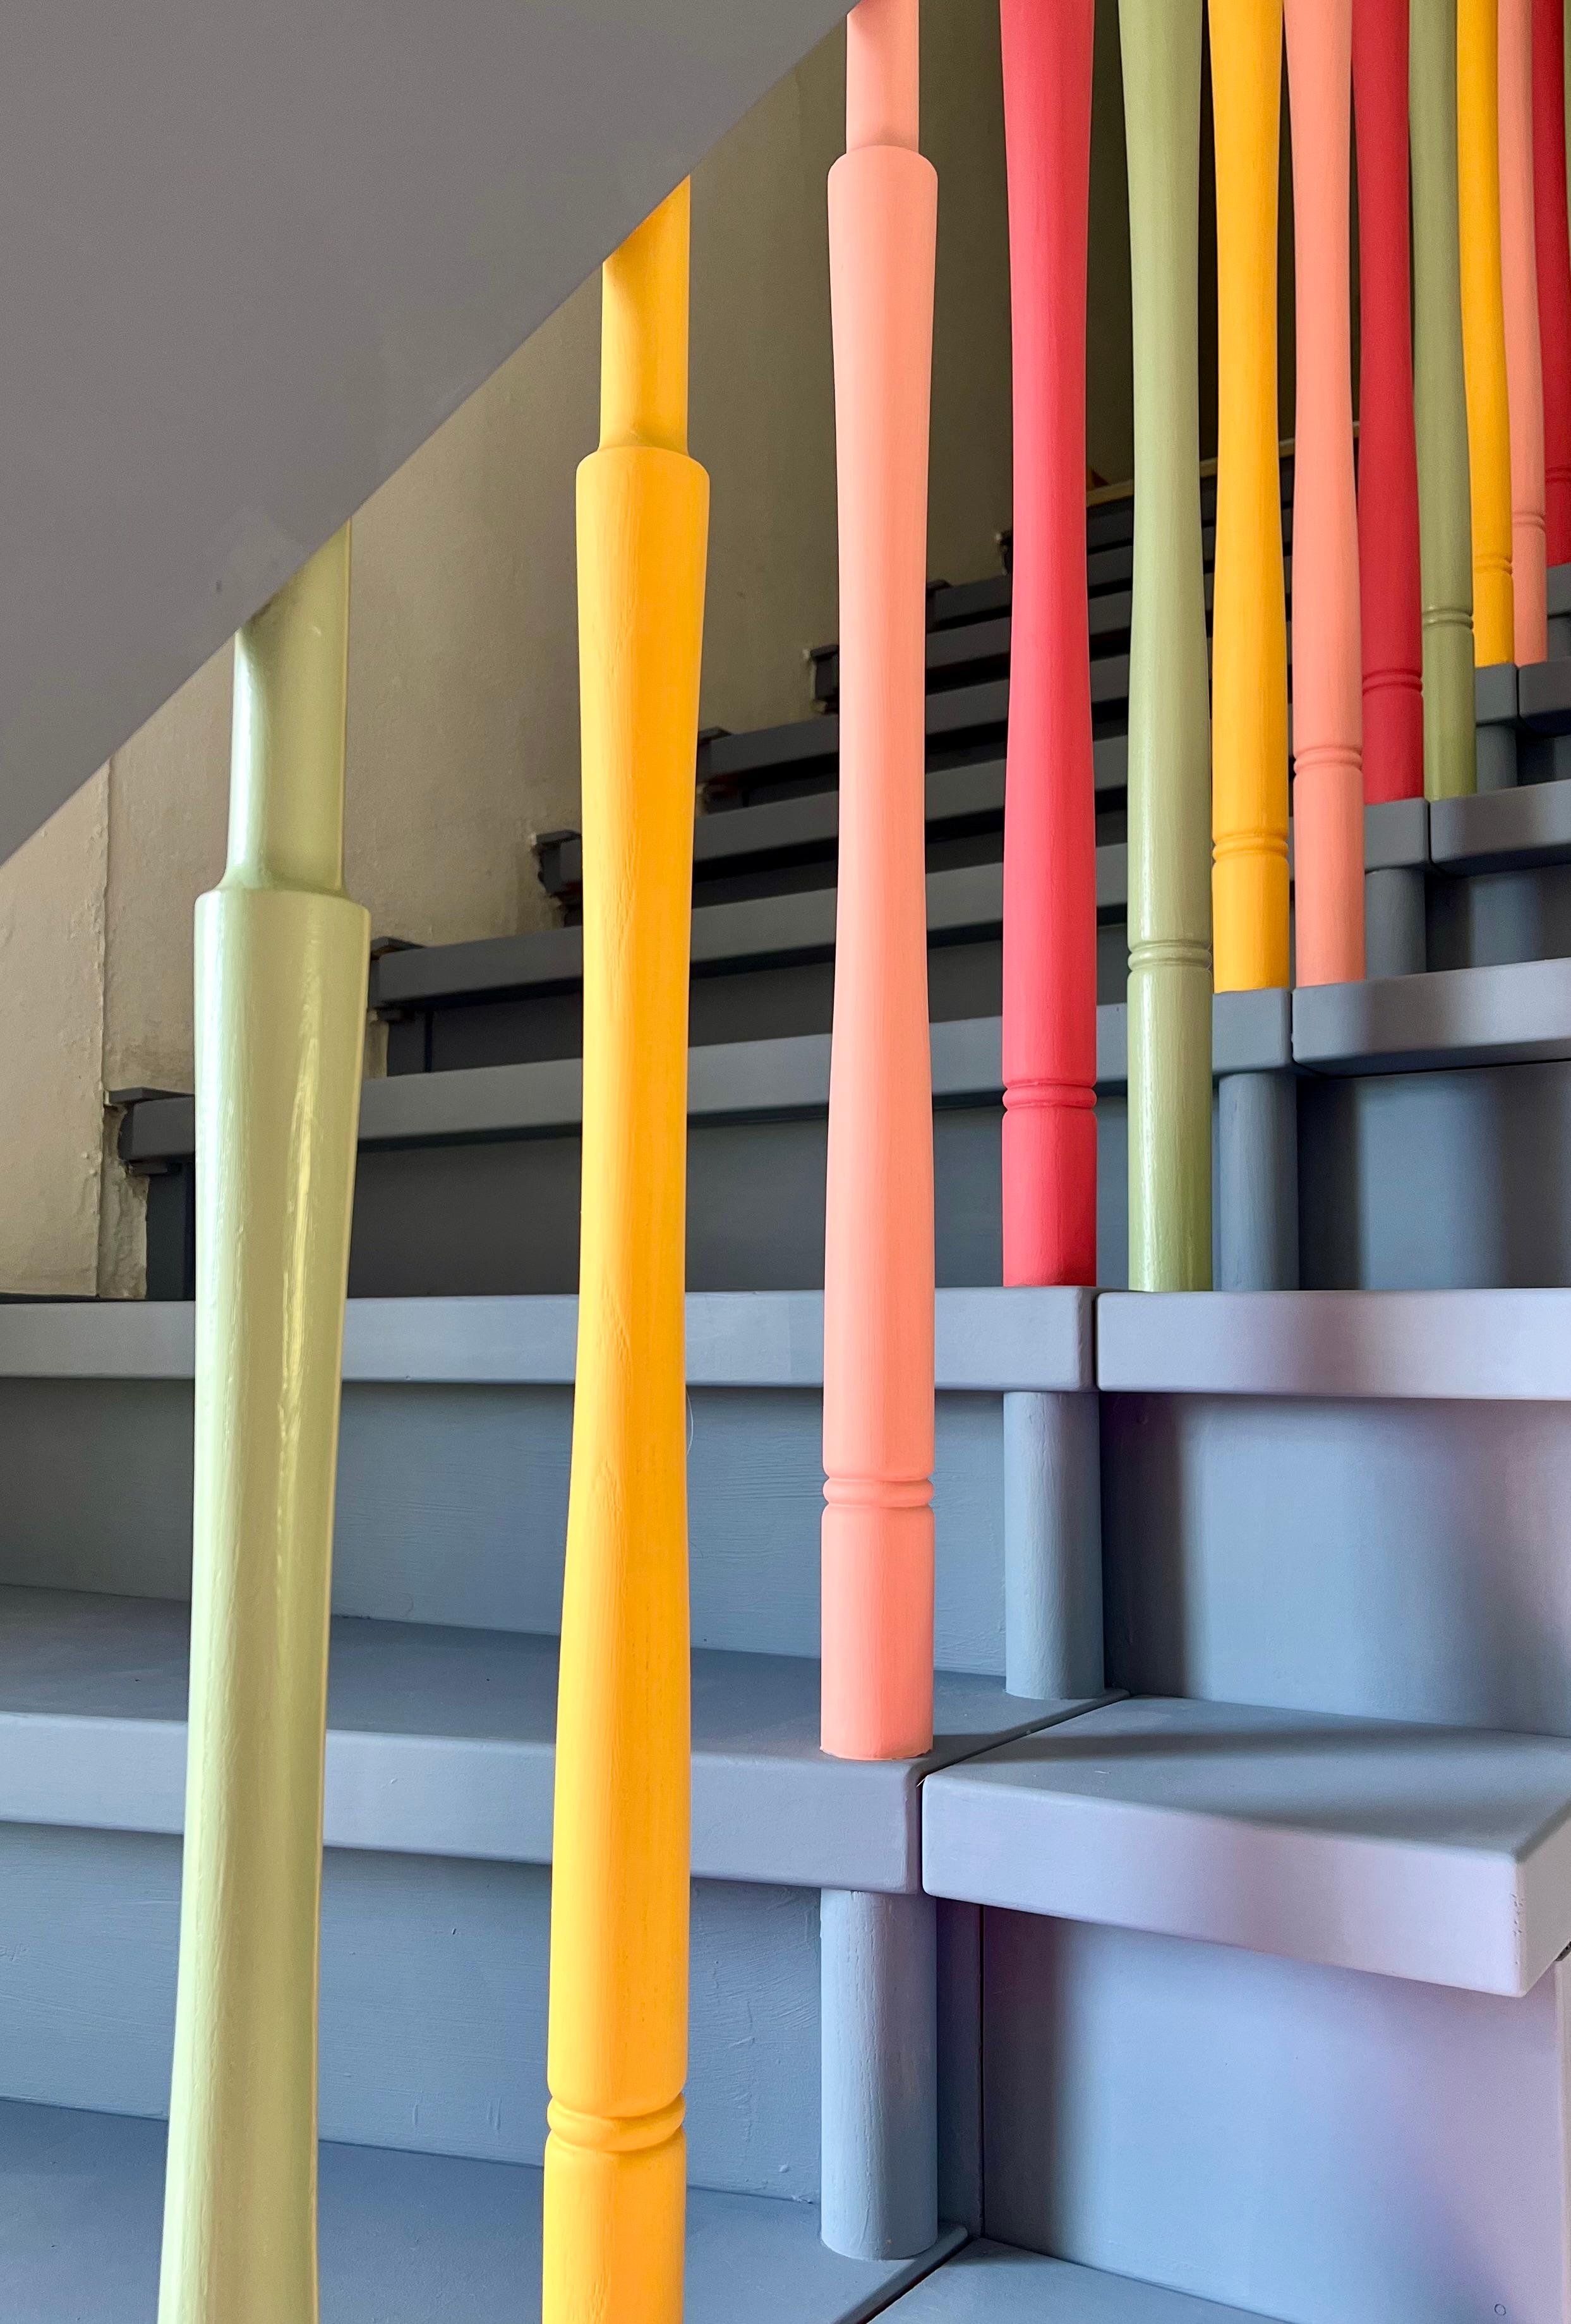 Mit #Kreidefarbe wurde die ungeliebte Holztreppe ein Regenbogen-Hingucker, der für gute Laune sorgt 😊🌈 #bunteszuhause #treppenhaus #diy